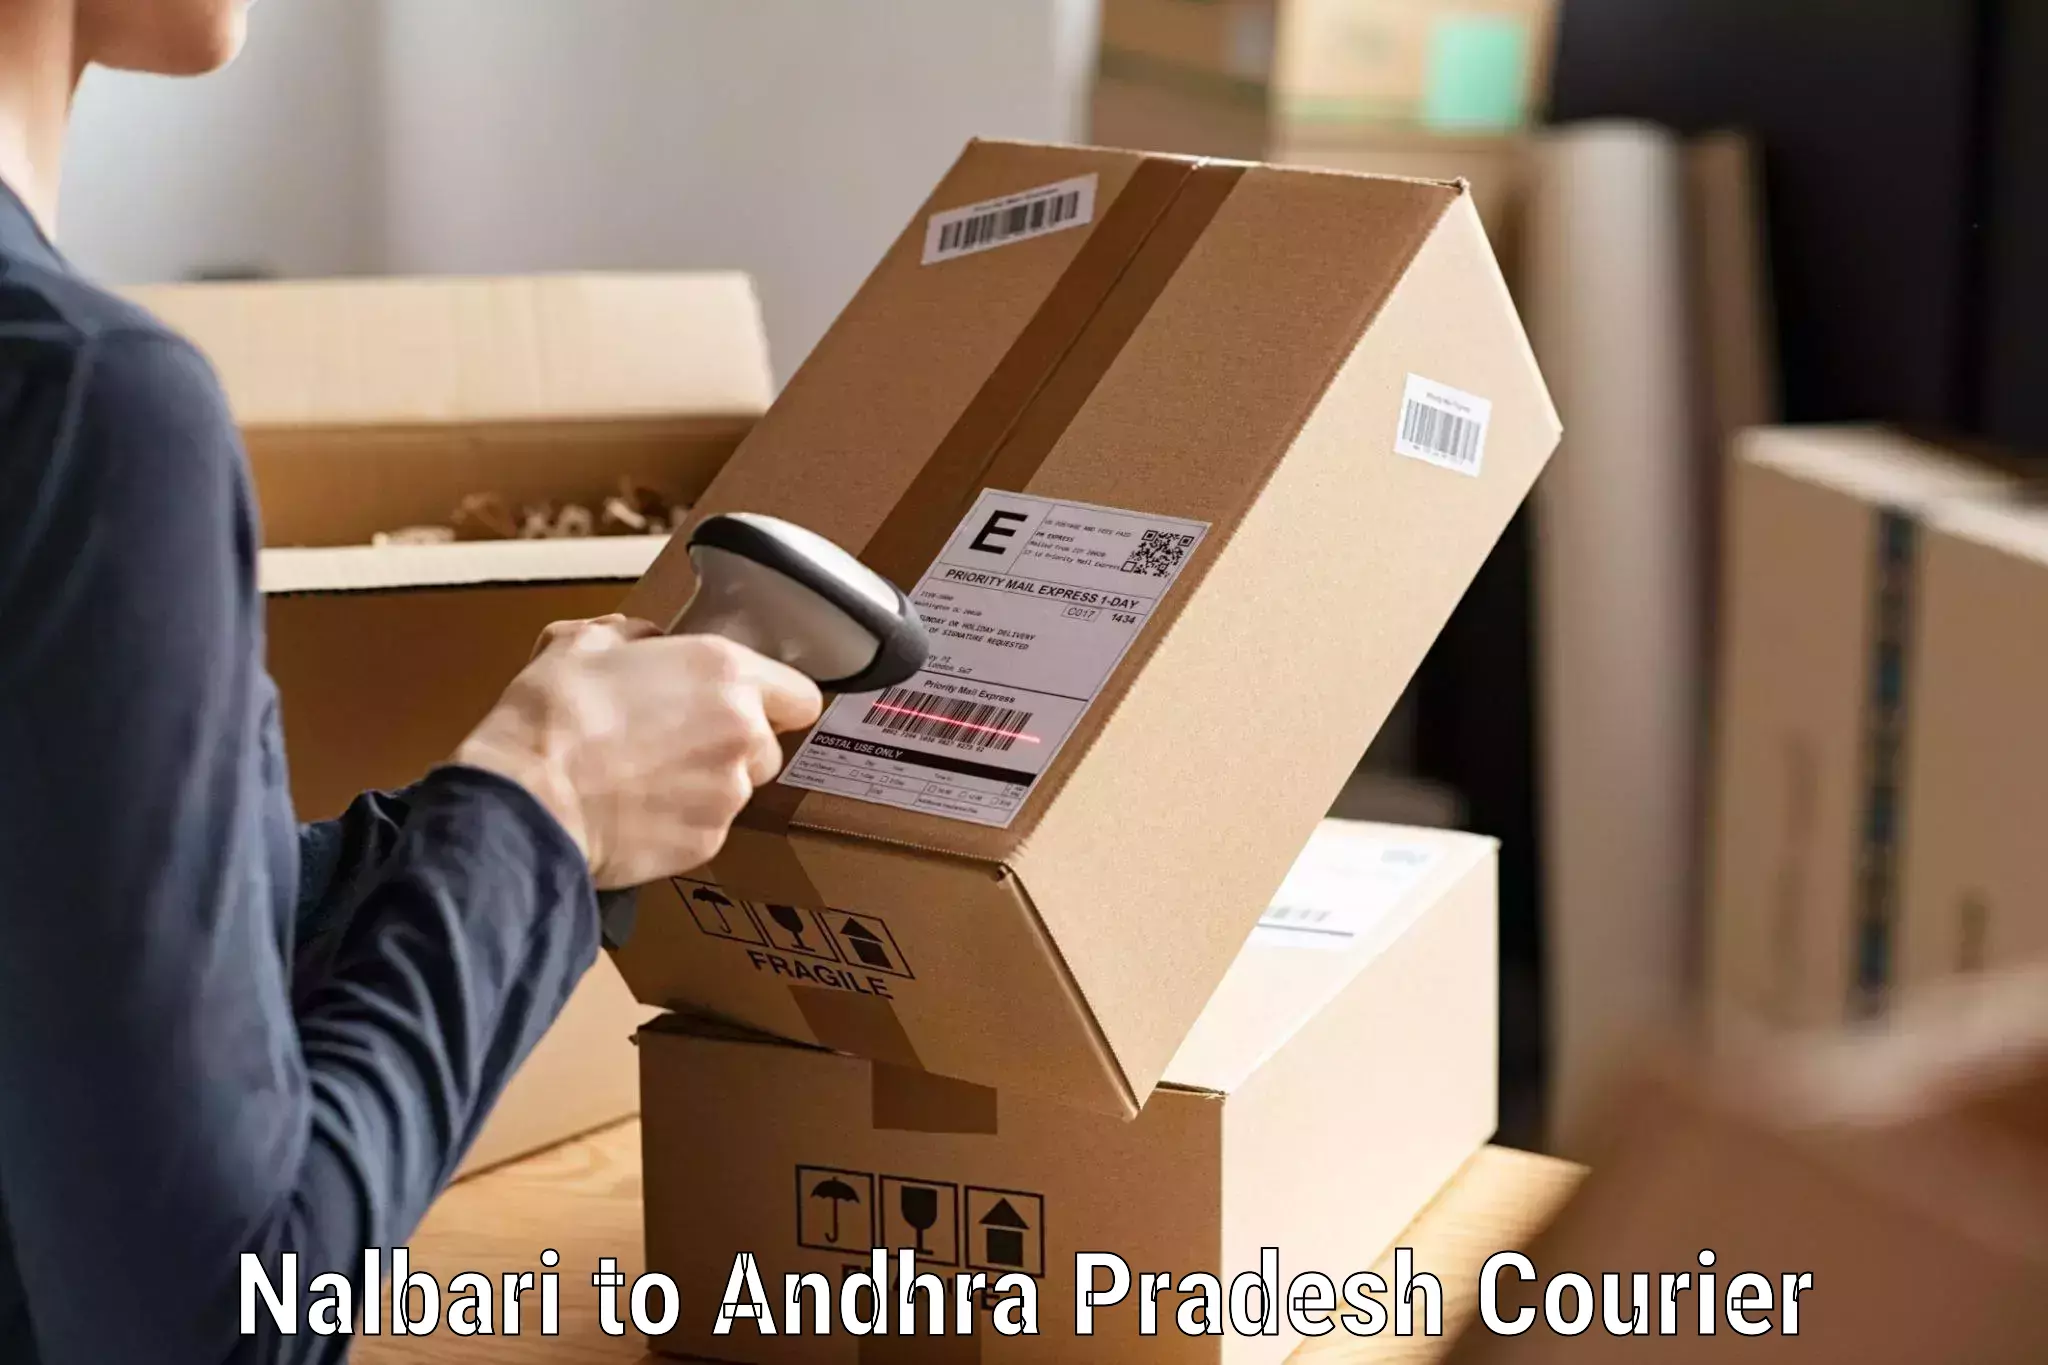 Custom courier packaging Nalbari to Udayagiri